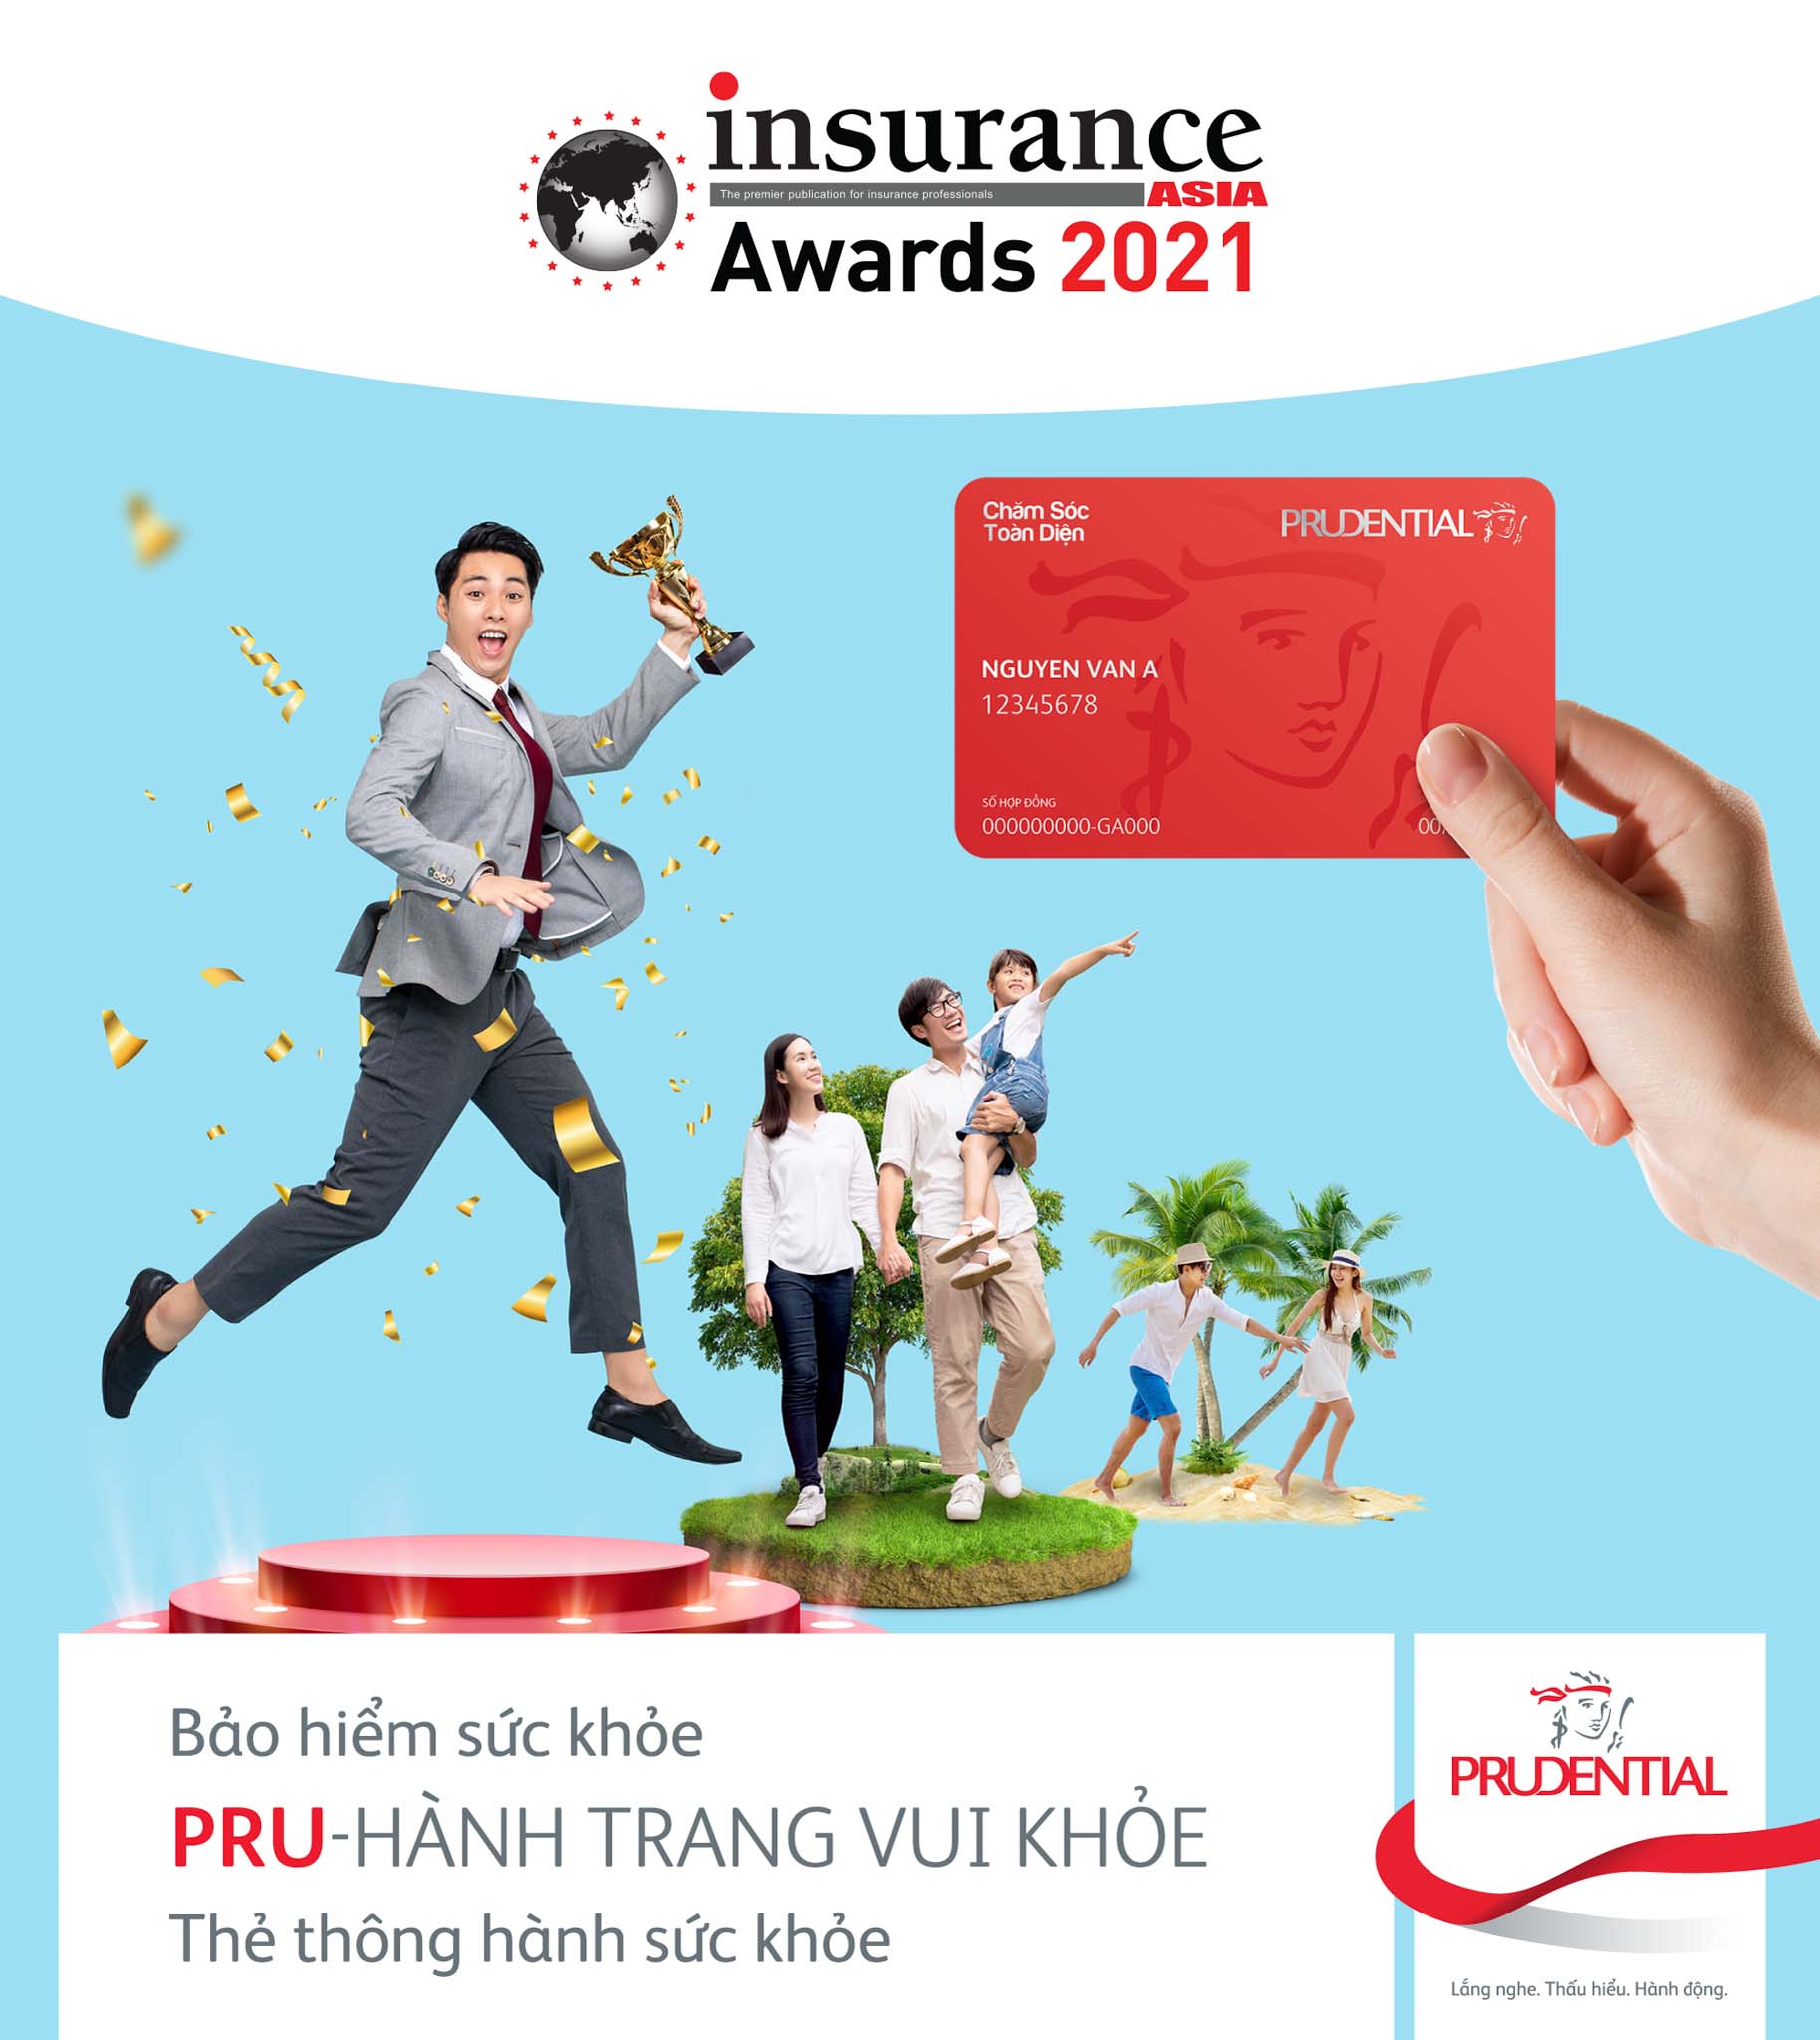 Prudential Việt Nam nhận giải thưởng kép, được vinh danh là “Công ty bảo hiểm nhân thọ quốc tế của năm” tại Insurance Asia Awards 2021